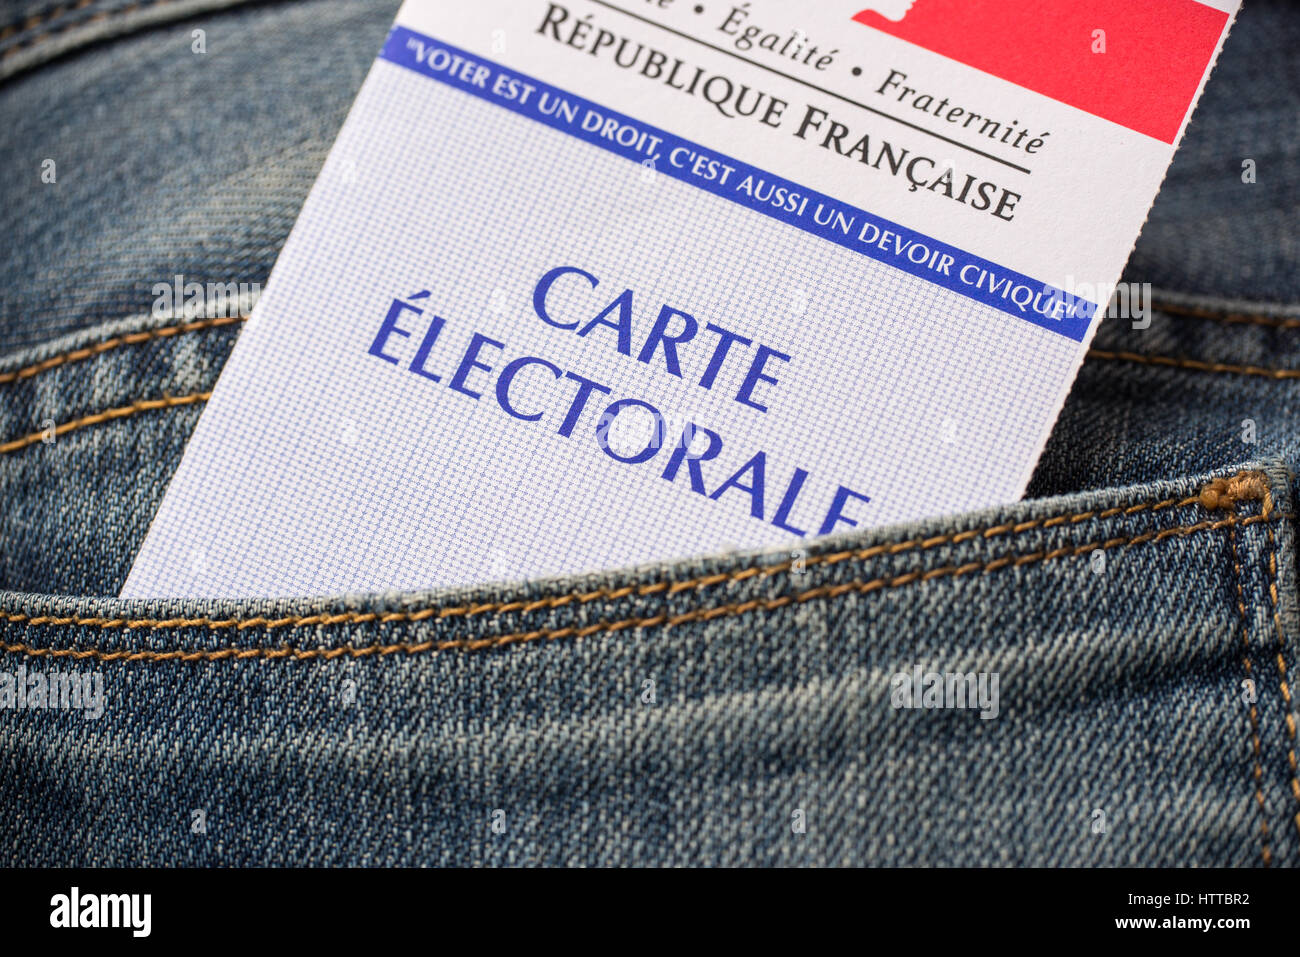 Carte électorale française dans l'arrière poche d'un jeans, élections présidentielles 2017 concept Banque D'Images